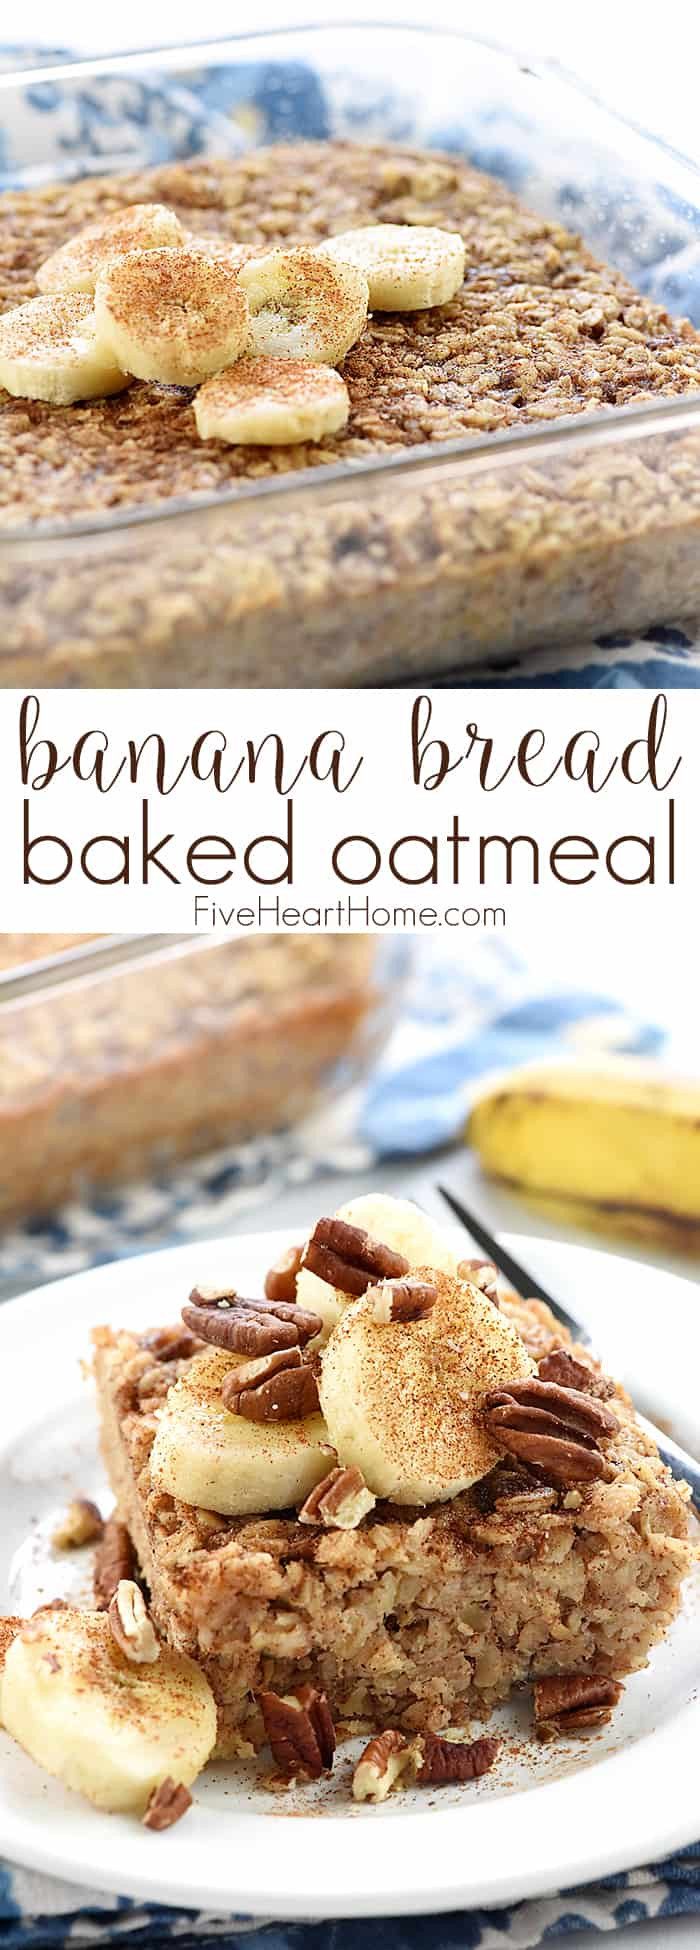 Oatmeal Bread Healthy
 Banana Bread Baked Oatmeal